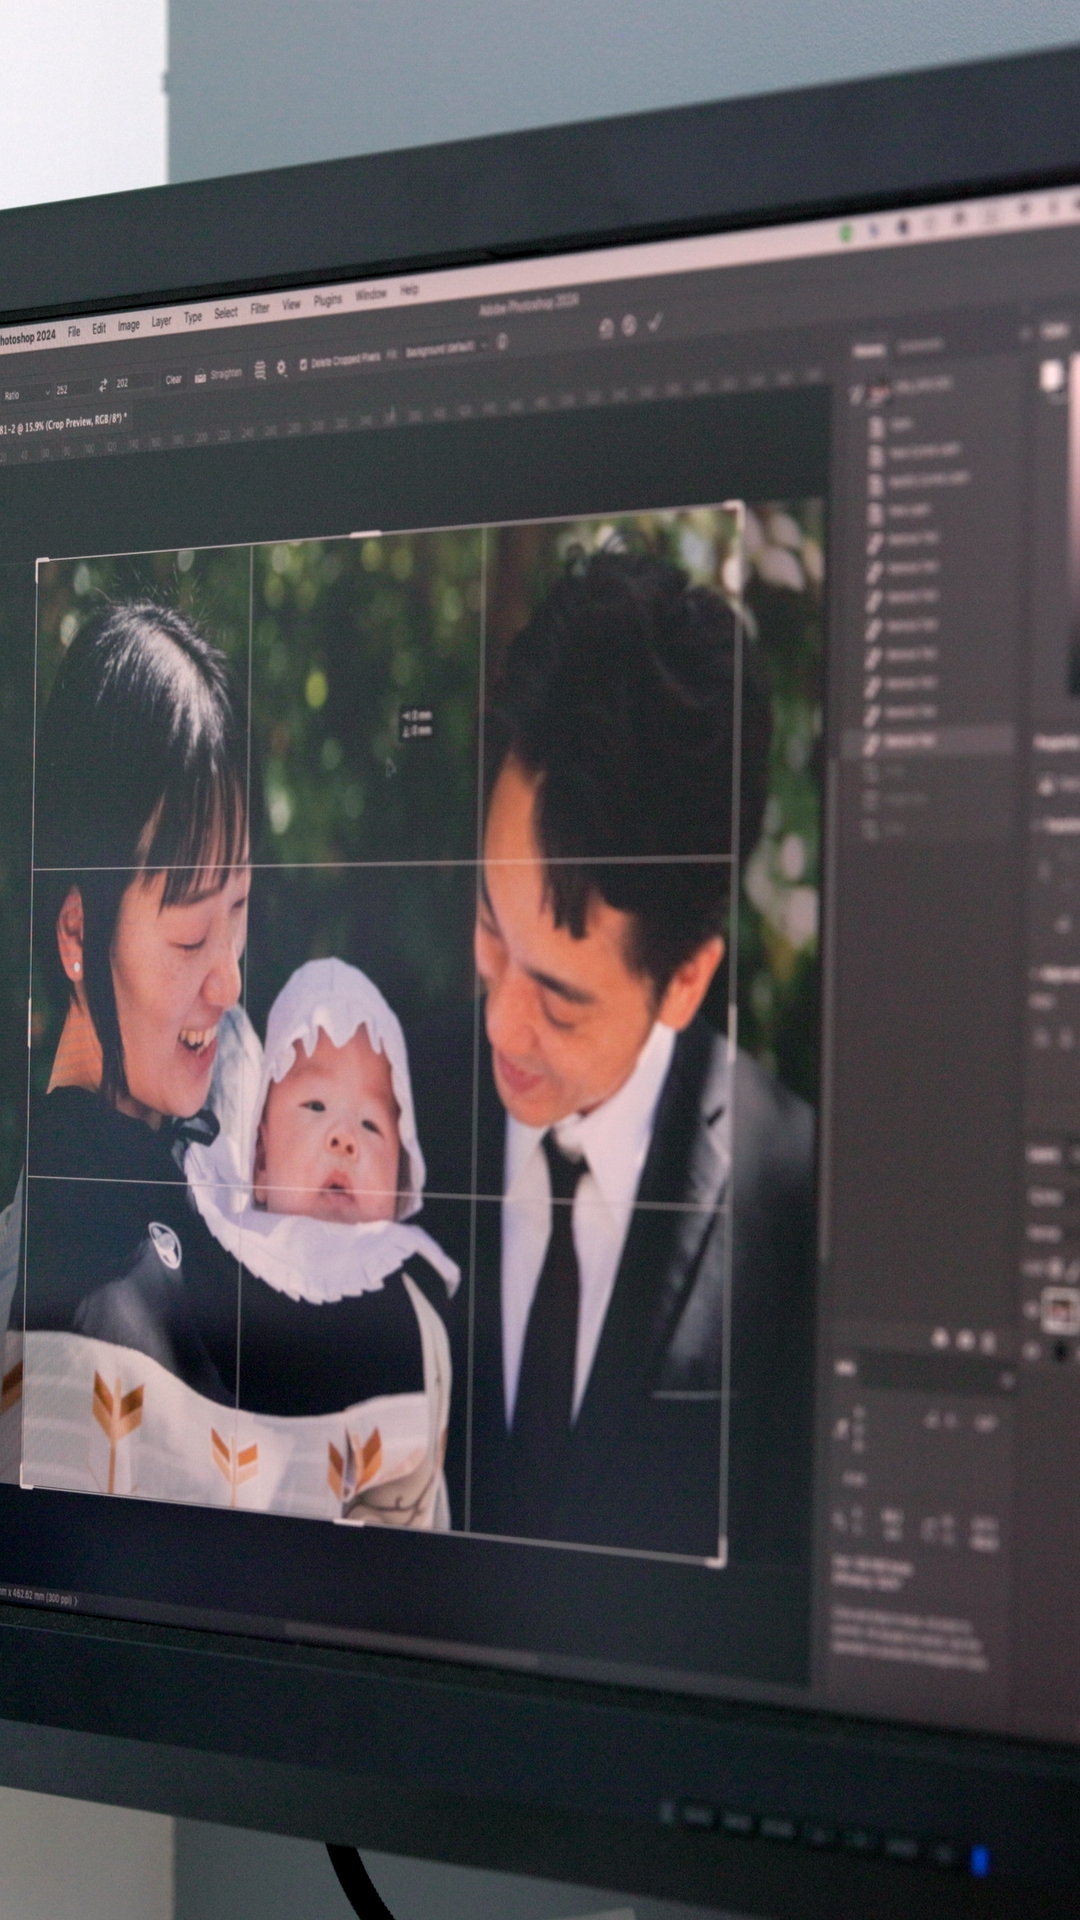 藤沢の家族写真スタジオのラシイスタジオのフォトフレーム